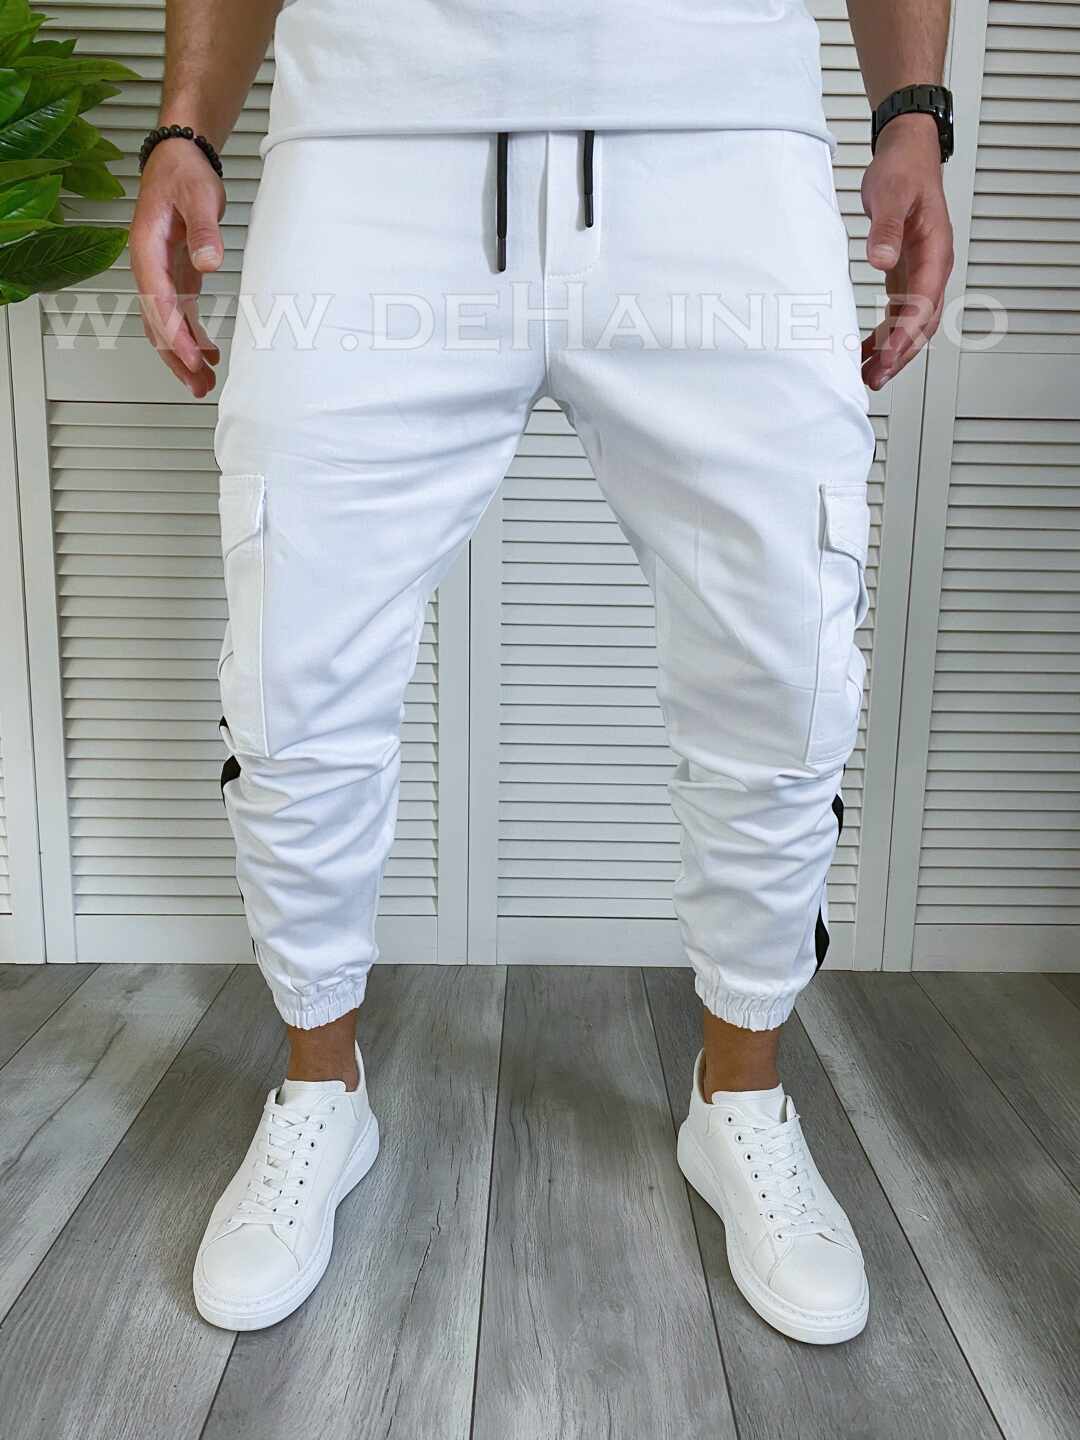 visitor Detective Forgiving Pantaloni albi pentru barbati - 6733 produse